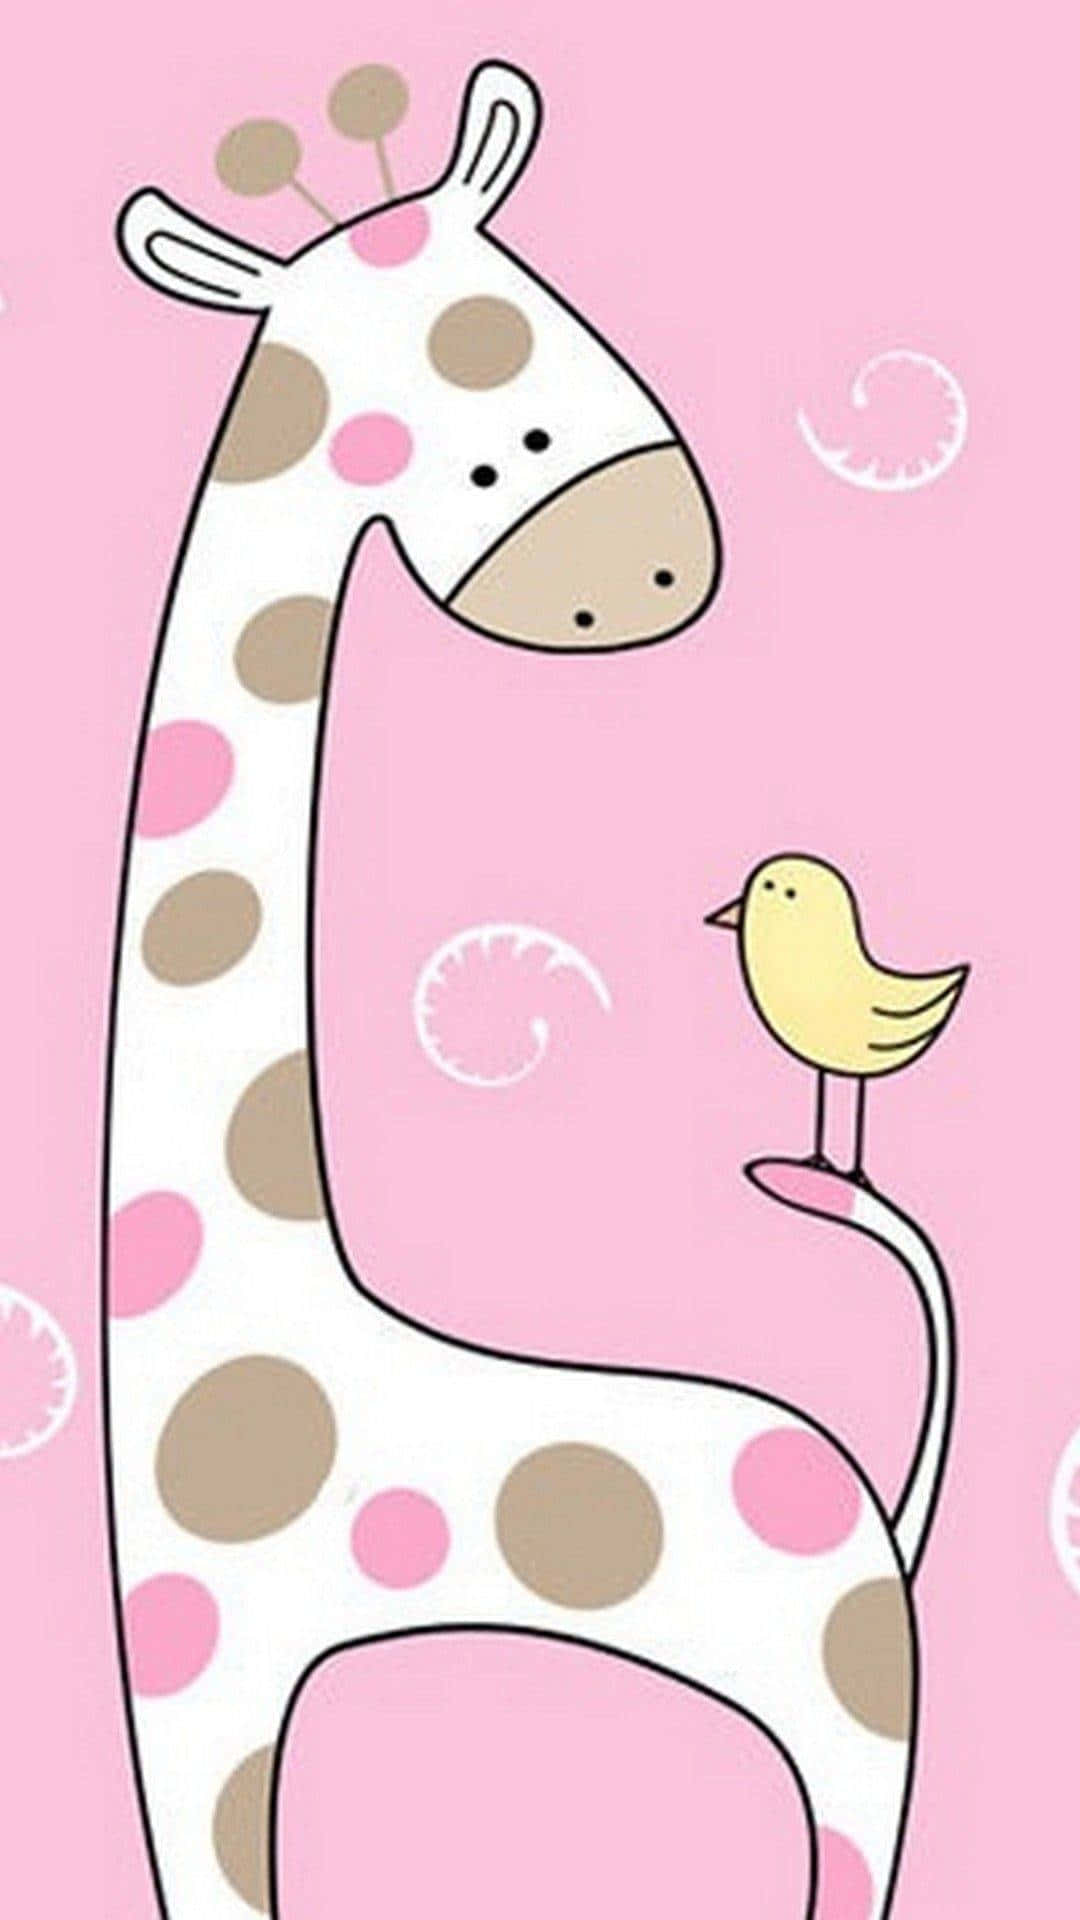 A Giraffe And Bird On A Pink Background Wallpaper